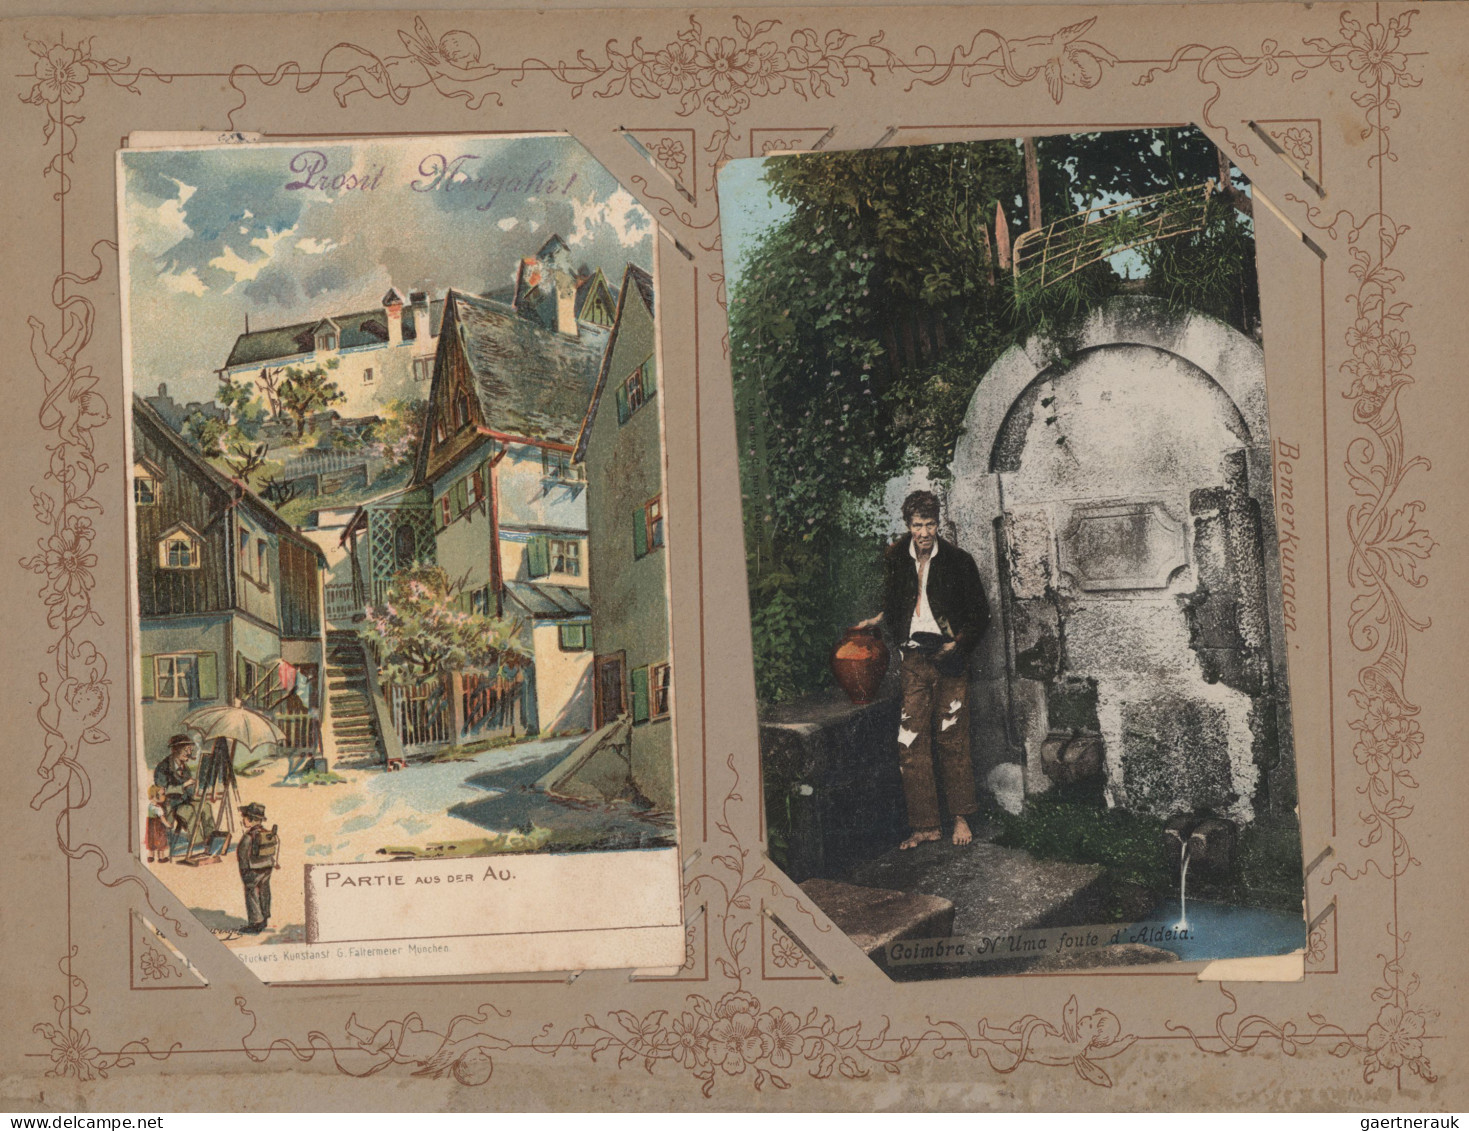 Ansichtskarten: Etliche hundert alte Ansichtskarten in 10 urigen Alben, viele Li